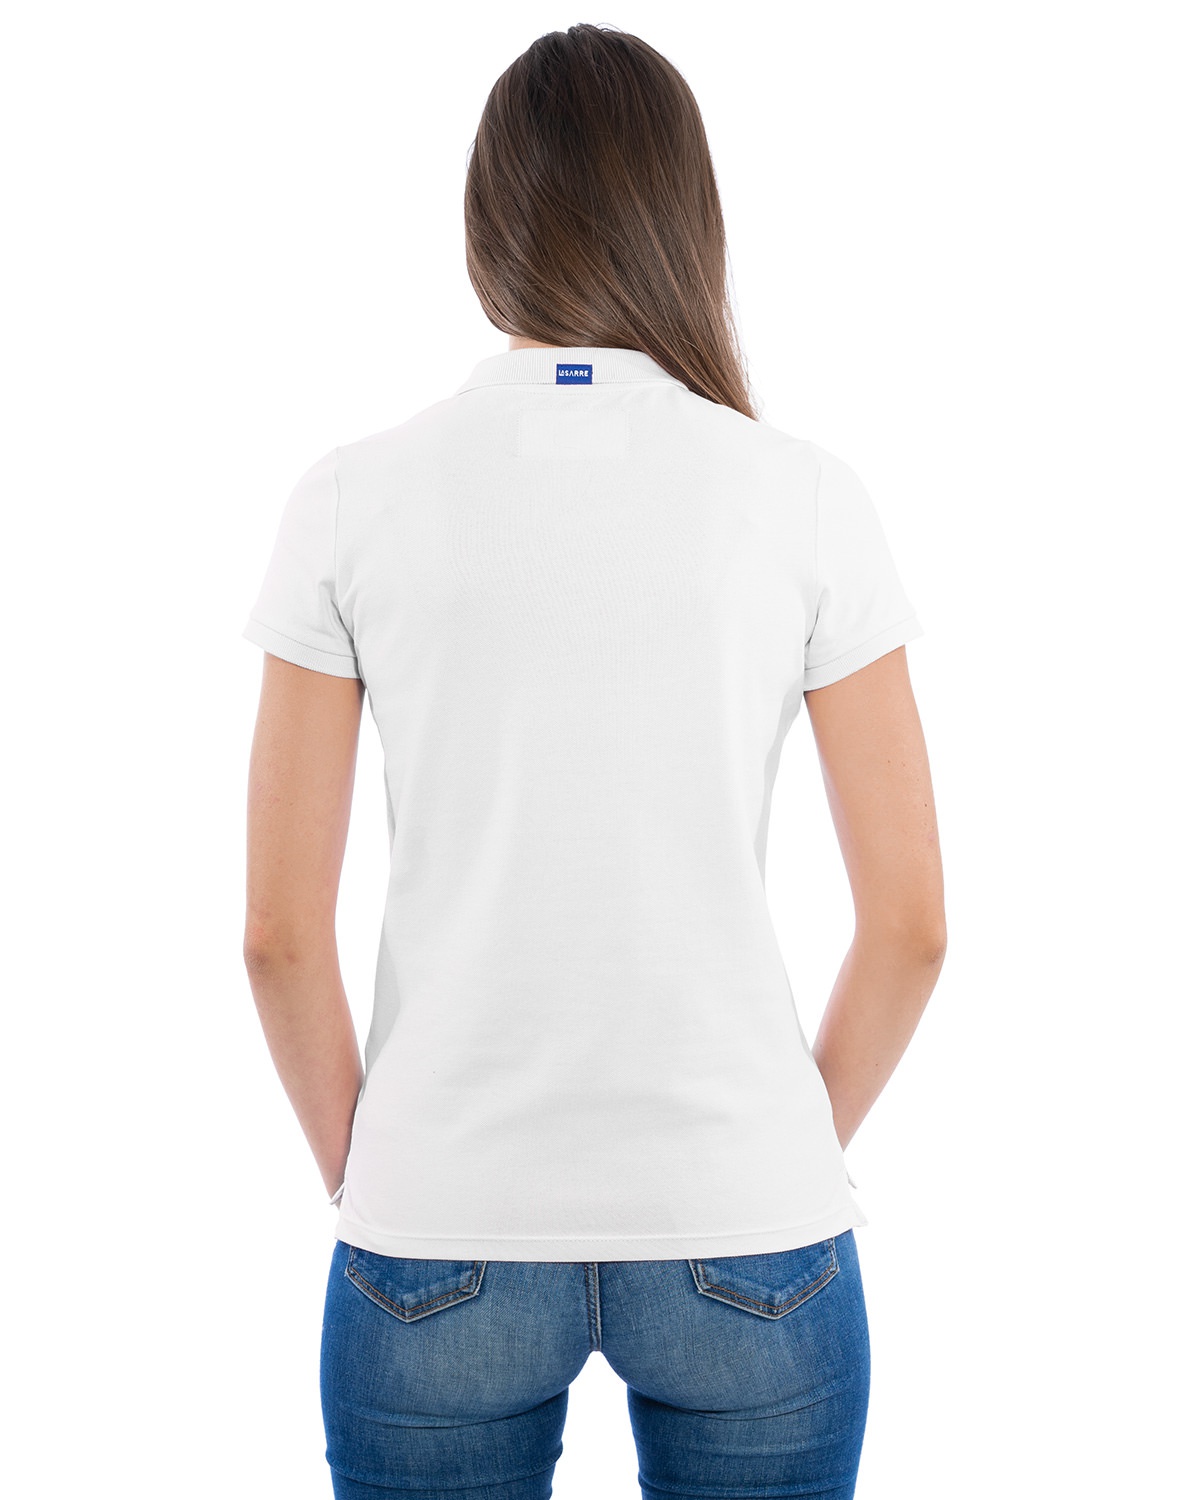 Rückansicht des weißen Ladies-Polo-Shirt der Saarland-Marke LA SARRE. Auffällig ist das blaue LA SARRE Saumlabel in der Mitte des Hemdkragens. Das Sarre-Wappen auf der Vorderseite ist hier nicht zu sehen.